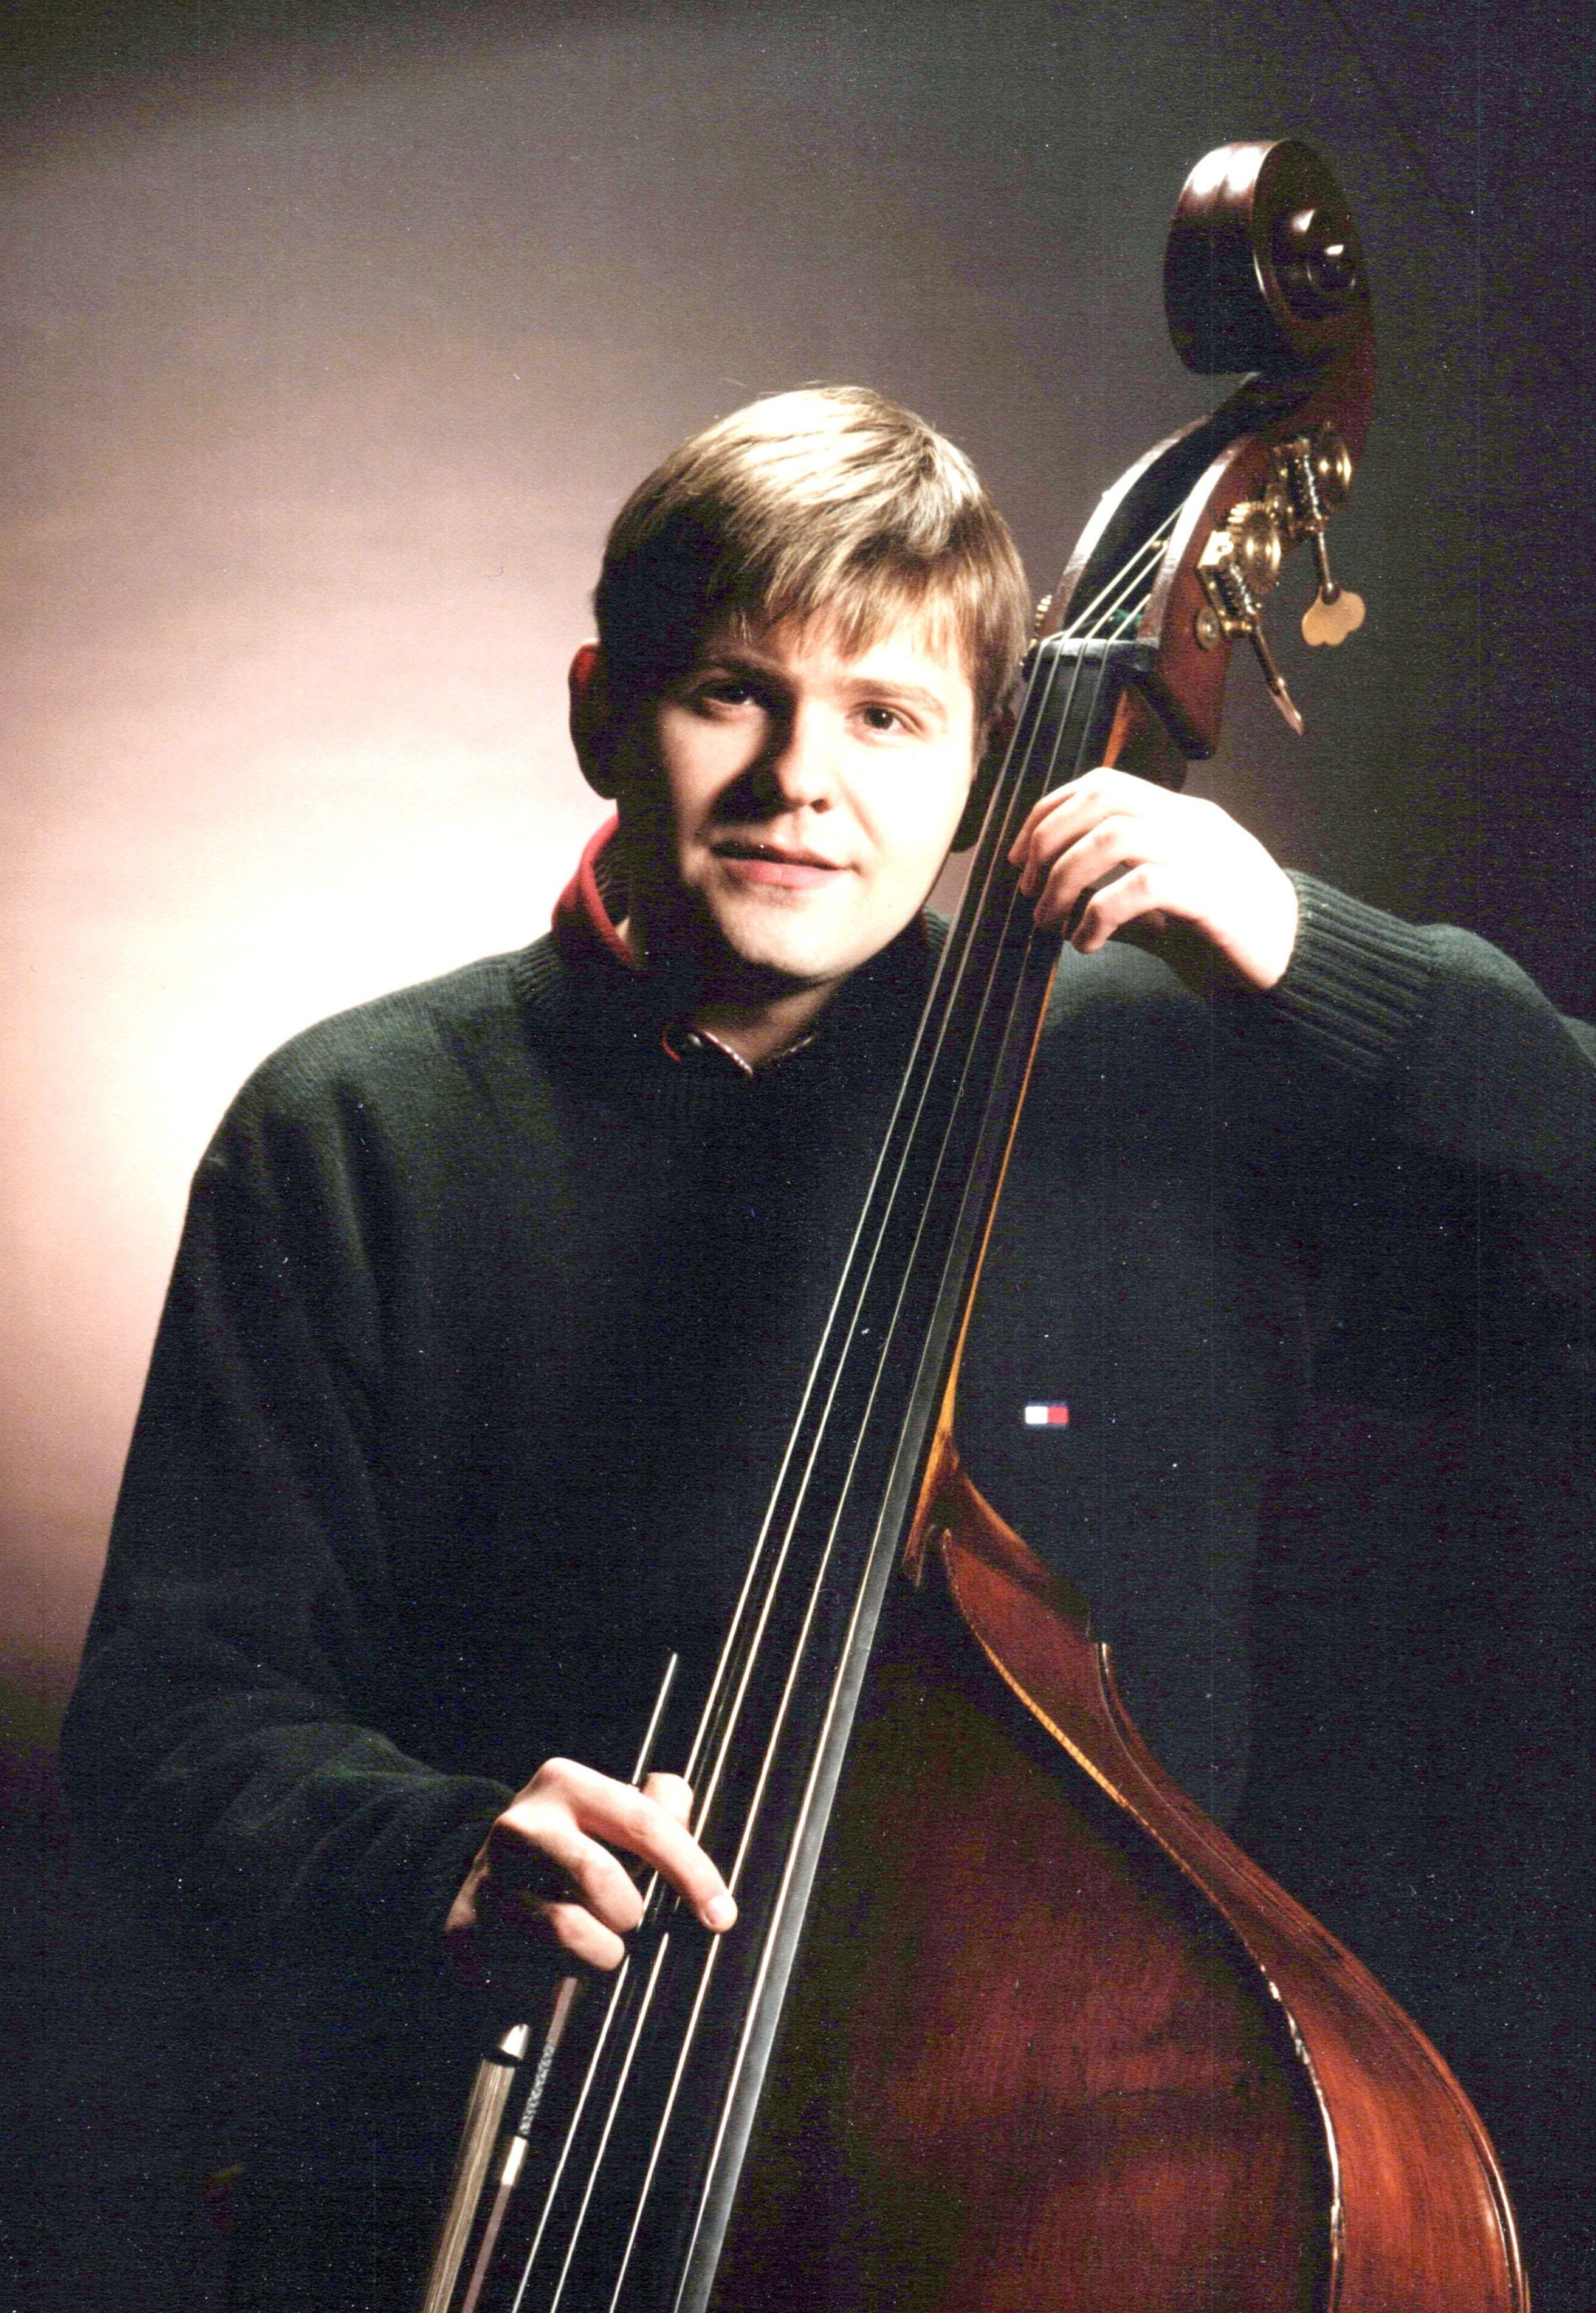 Young bassist Patrick McNally